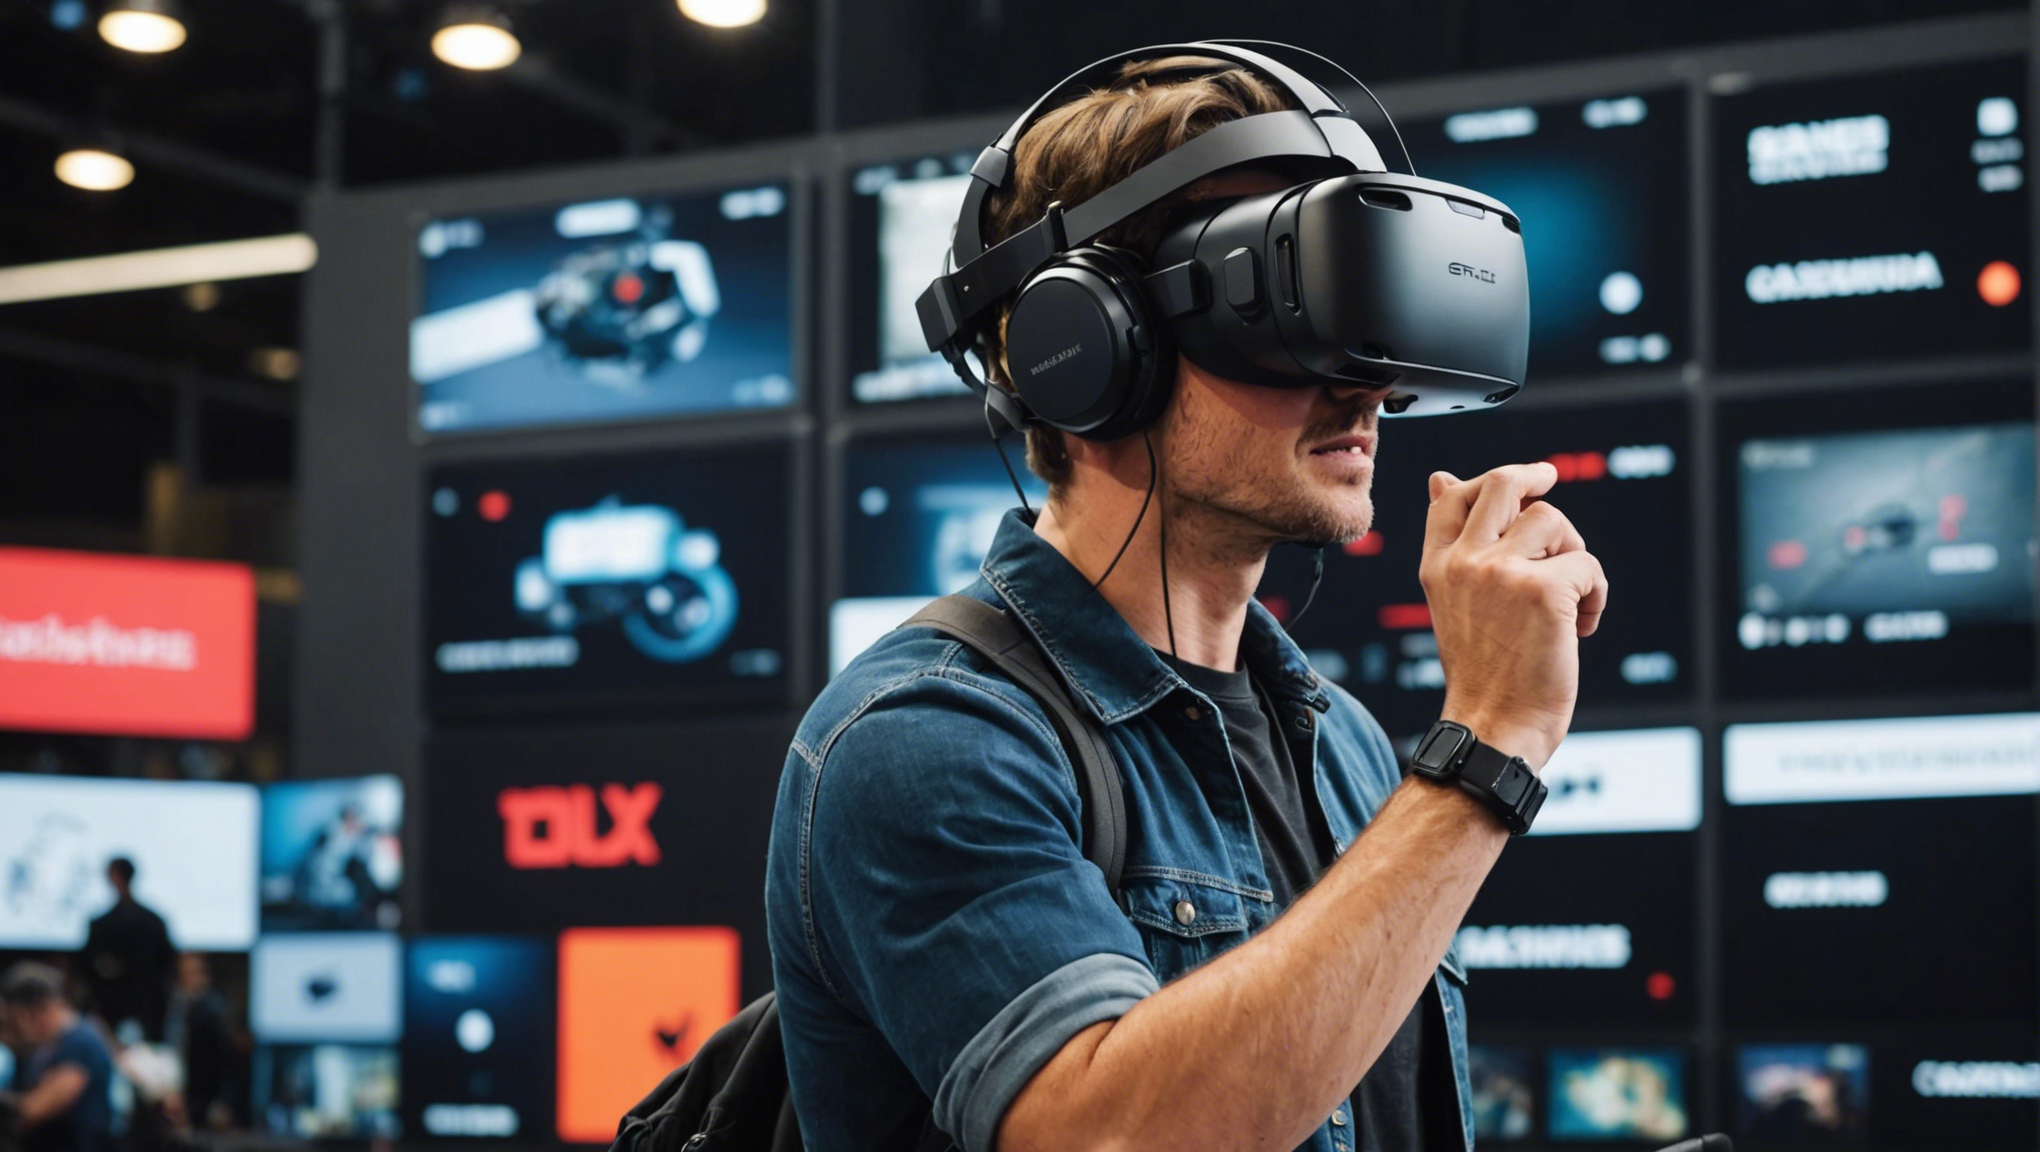 découvrez les meilleurs casques de réalité virtuelle du marché pour une expérience immersive et captivante. comparez les fonctionnalités et trouvez le casque parfait pour vos besoins.